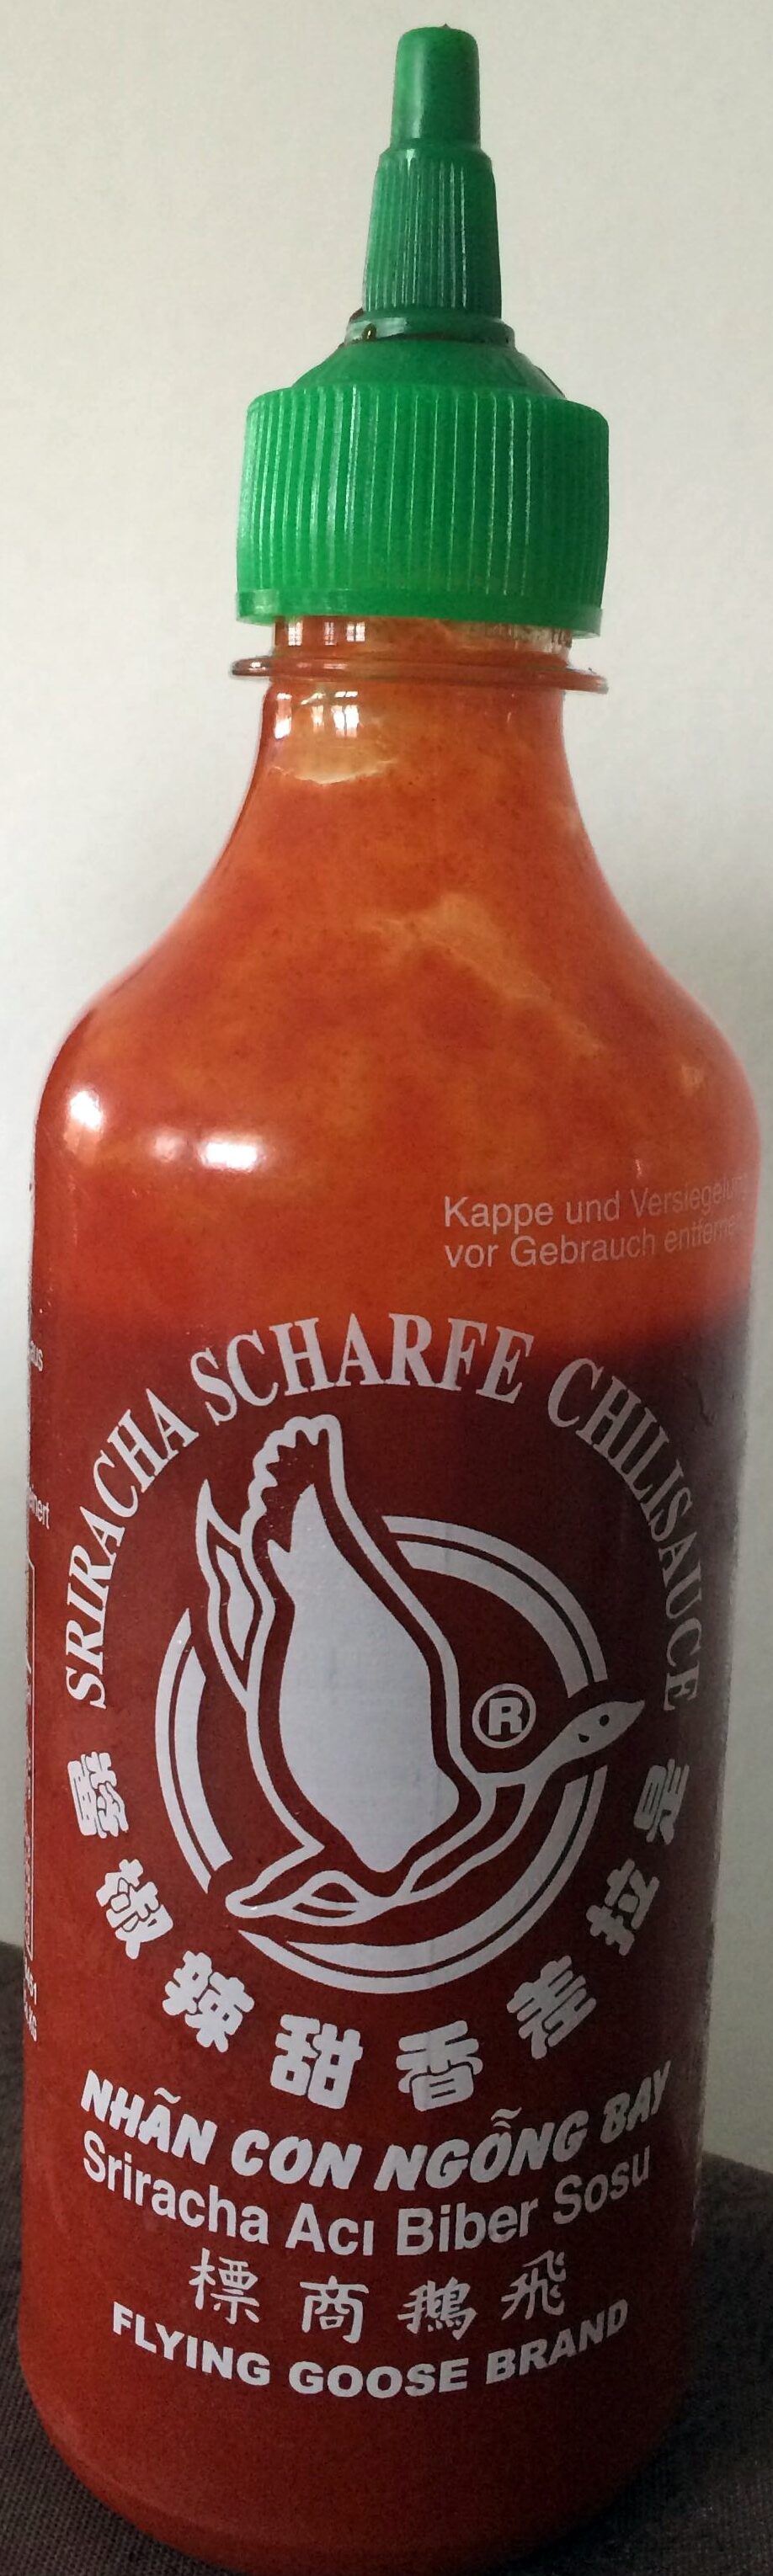 Sriracha Hot Chilli Sås - Product